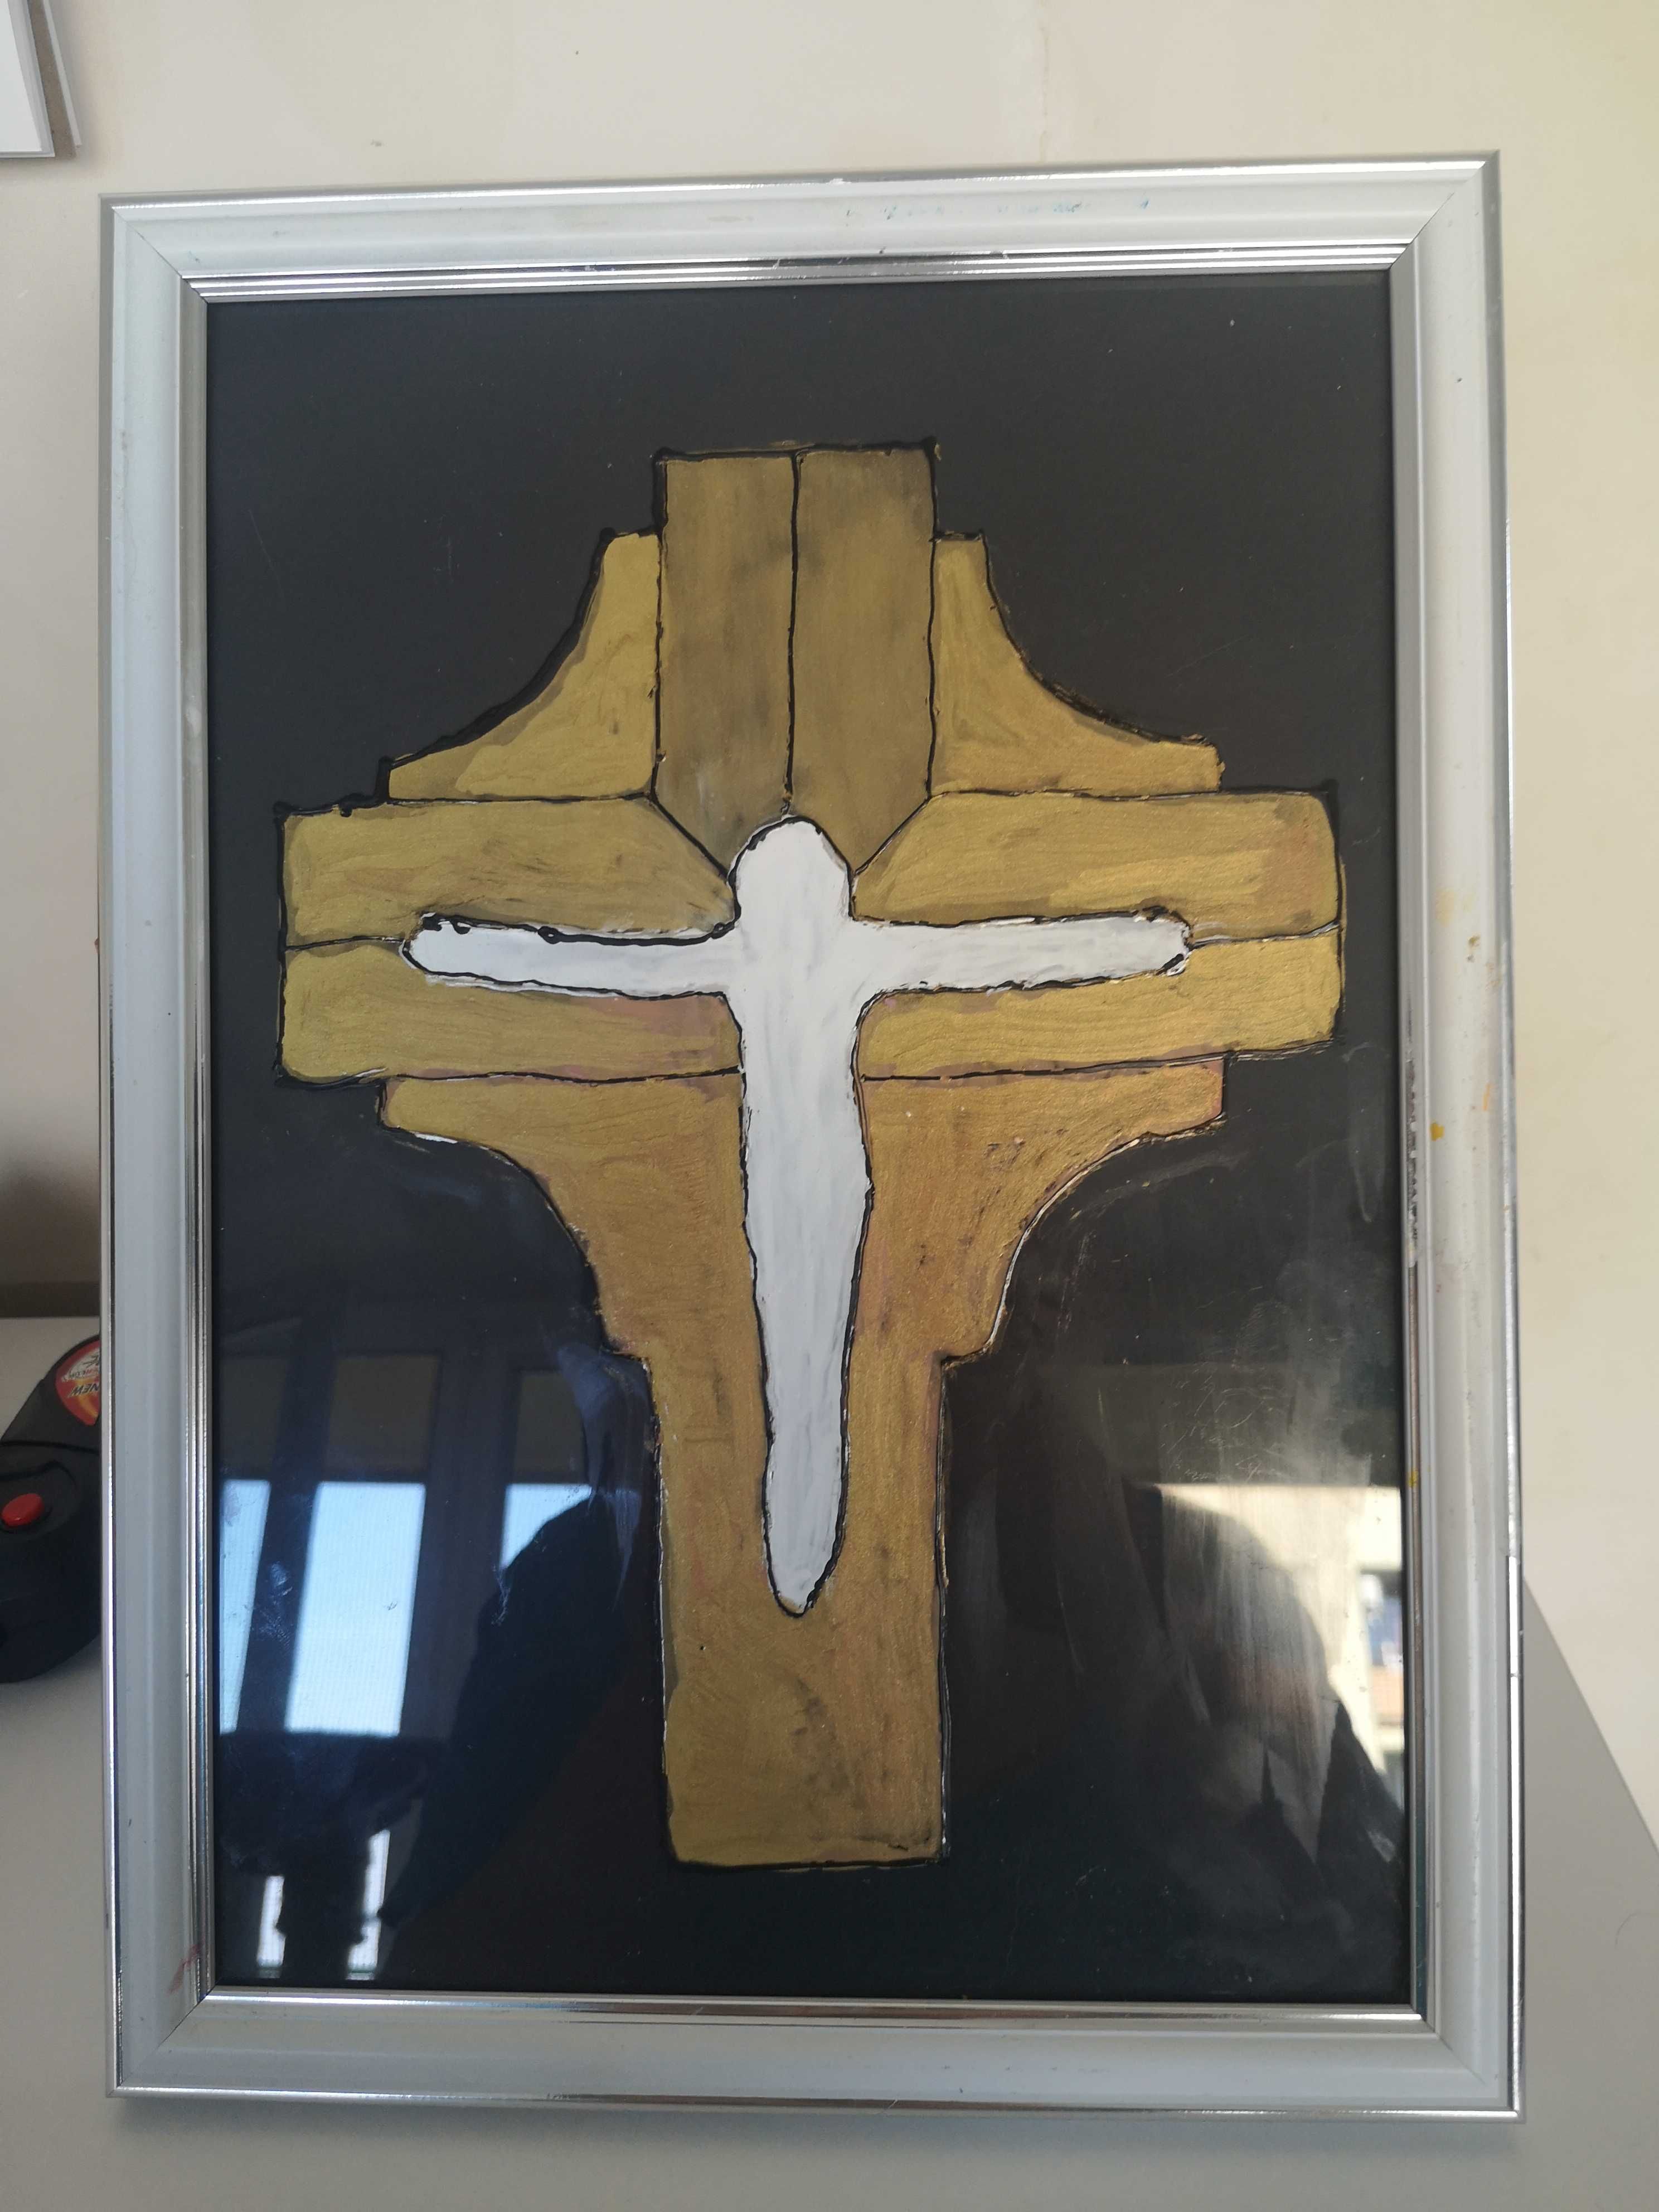 Skromny, ale wymowny krzyż malowany na szkle